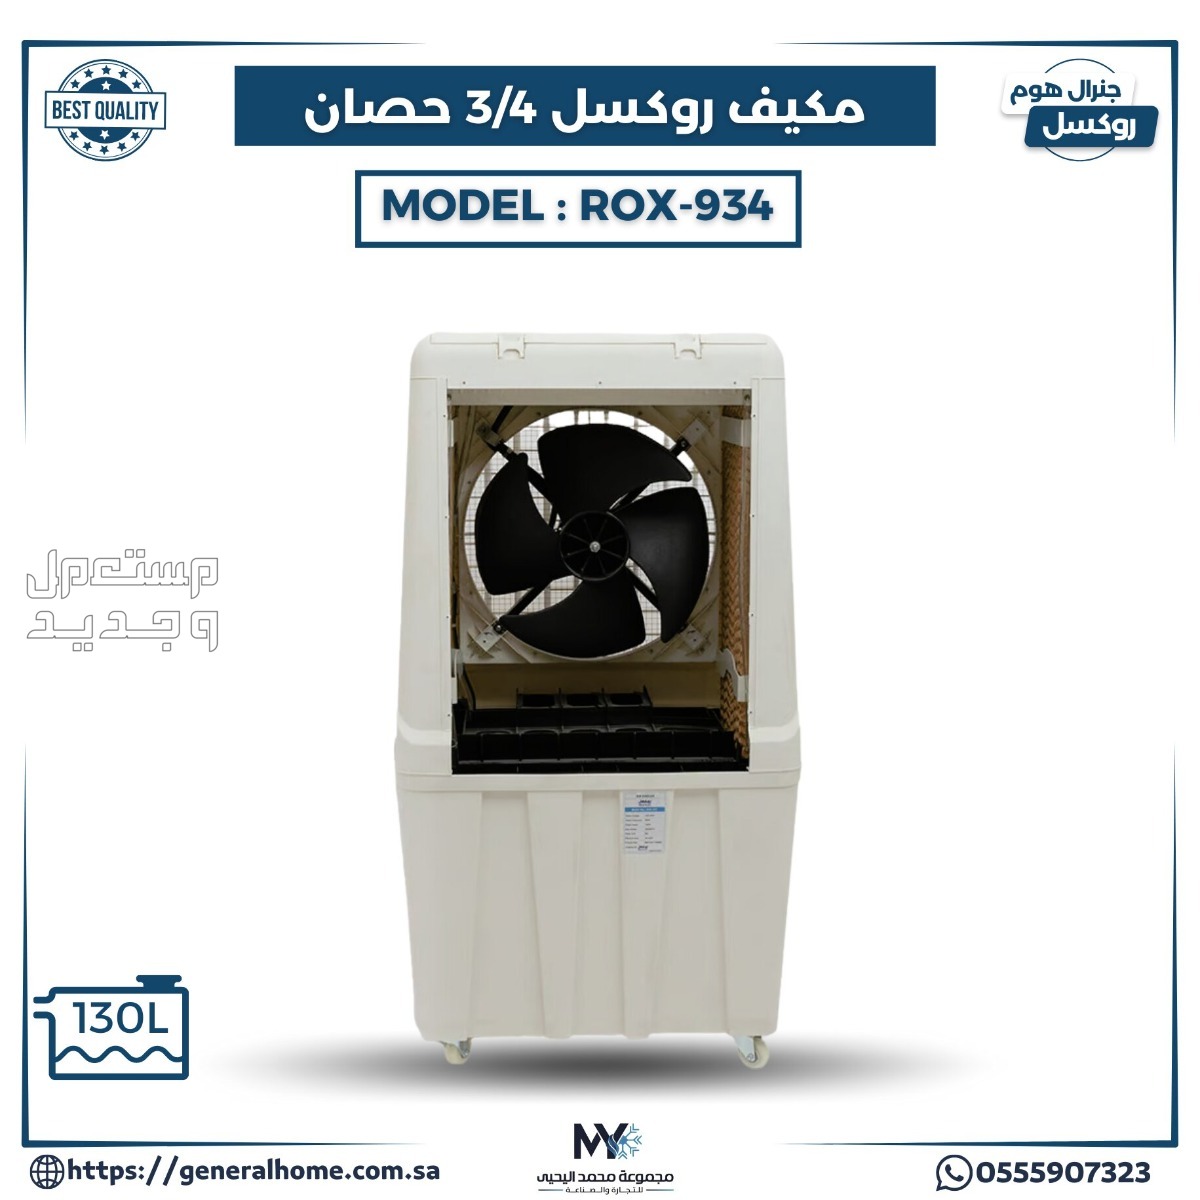 عروض اليحيى للمكيفات بالأنواع والمواصفات والصور والأسعار في ليبيا مكيف روكسل 3/4 حصان يدوي موديل ROX - 934